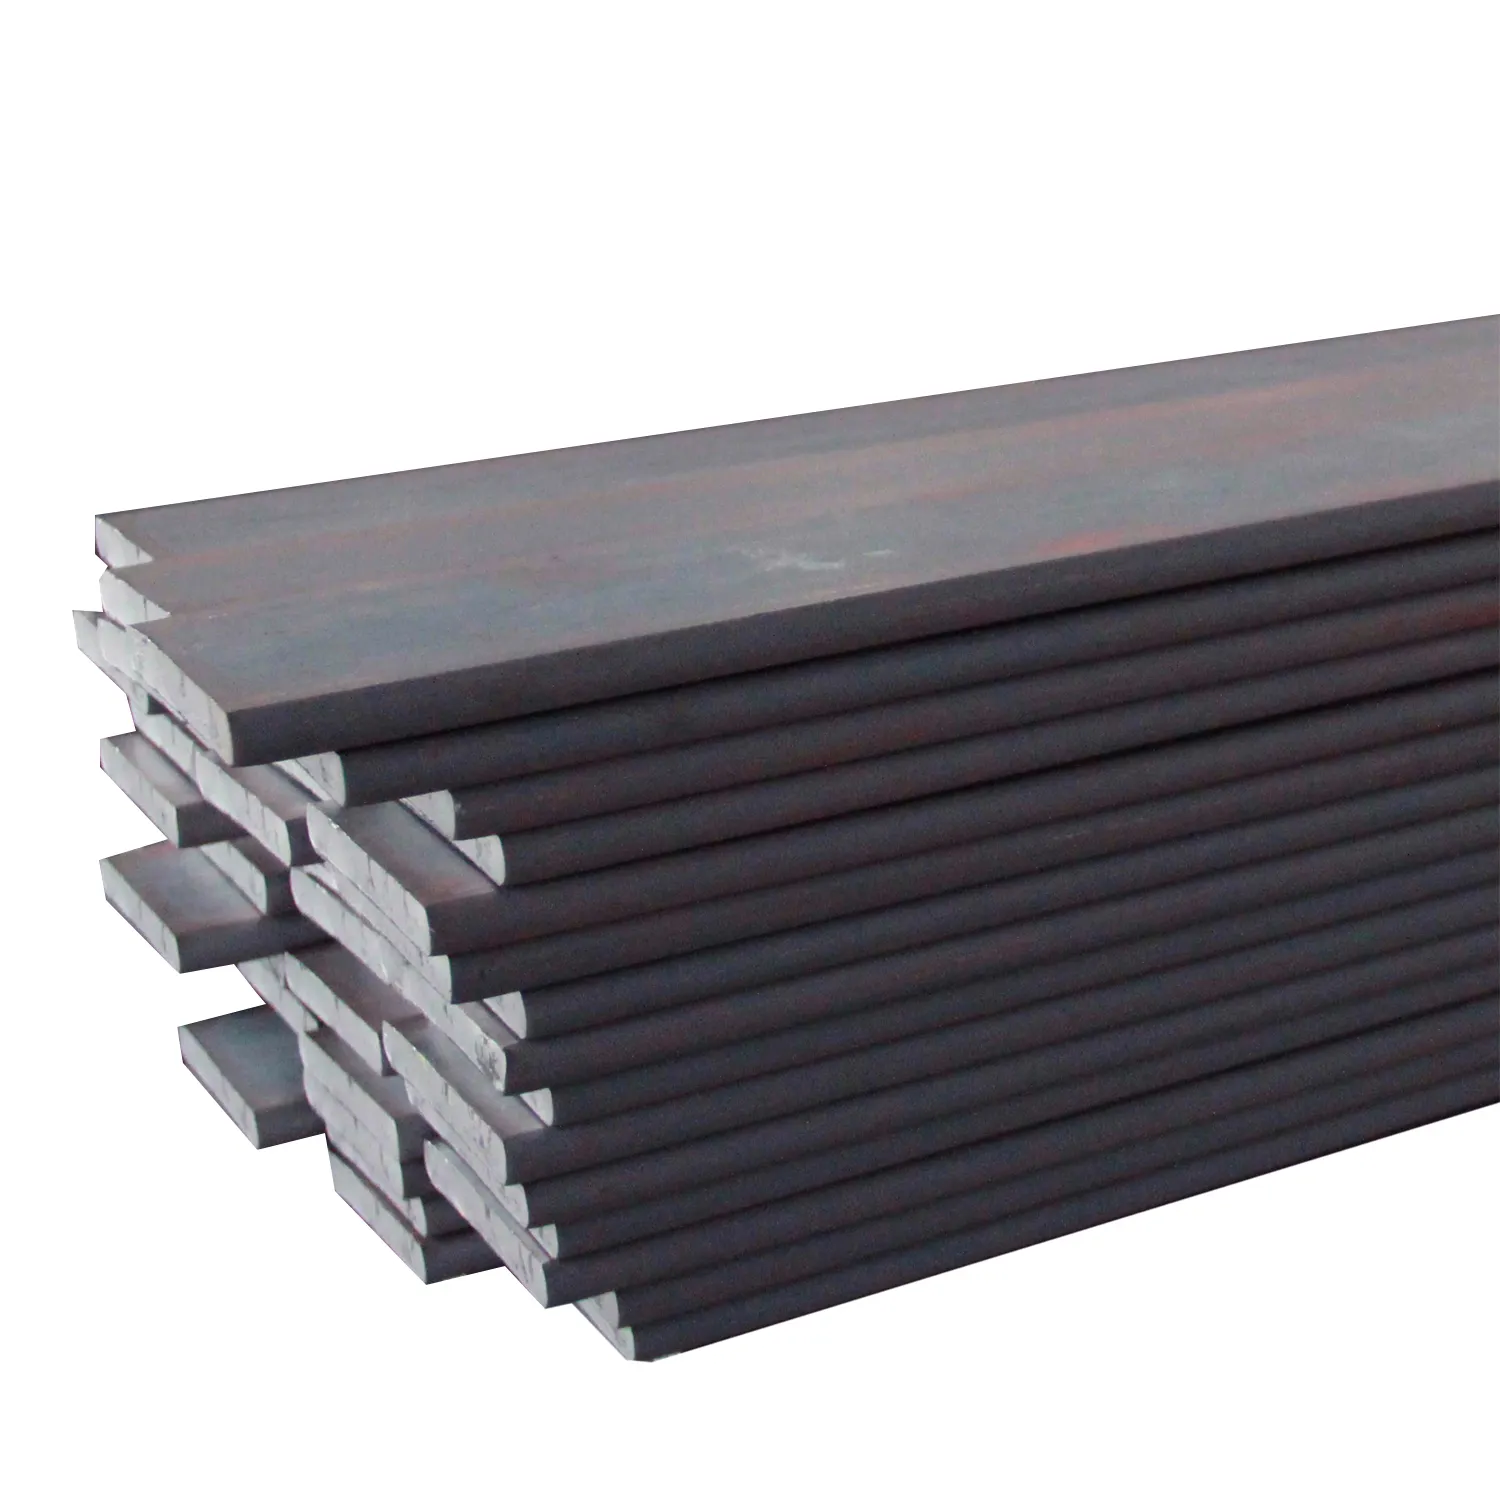 Yeni ürün yüksek kalite sıcak satış çelik fiyatları sıcak haddelenmiş düzleştirici Bar karbon çelik yassı Bar